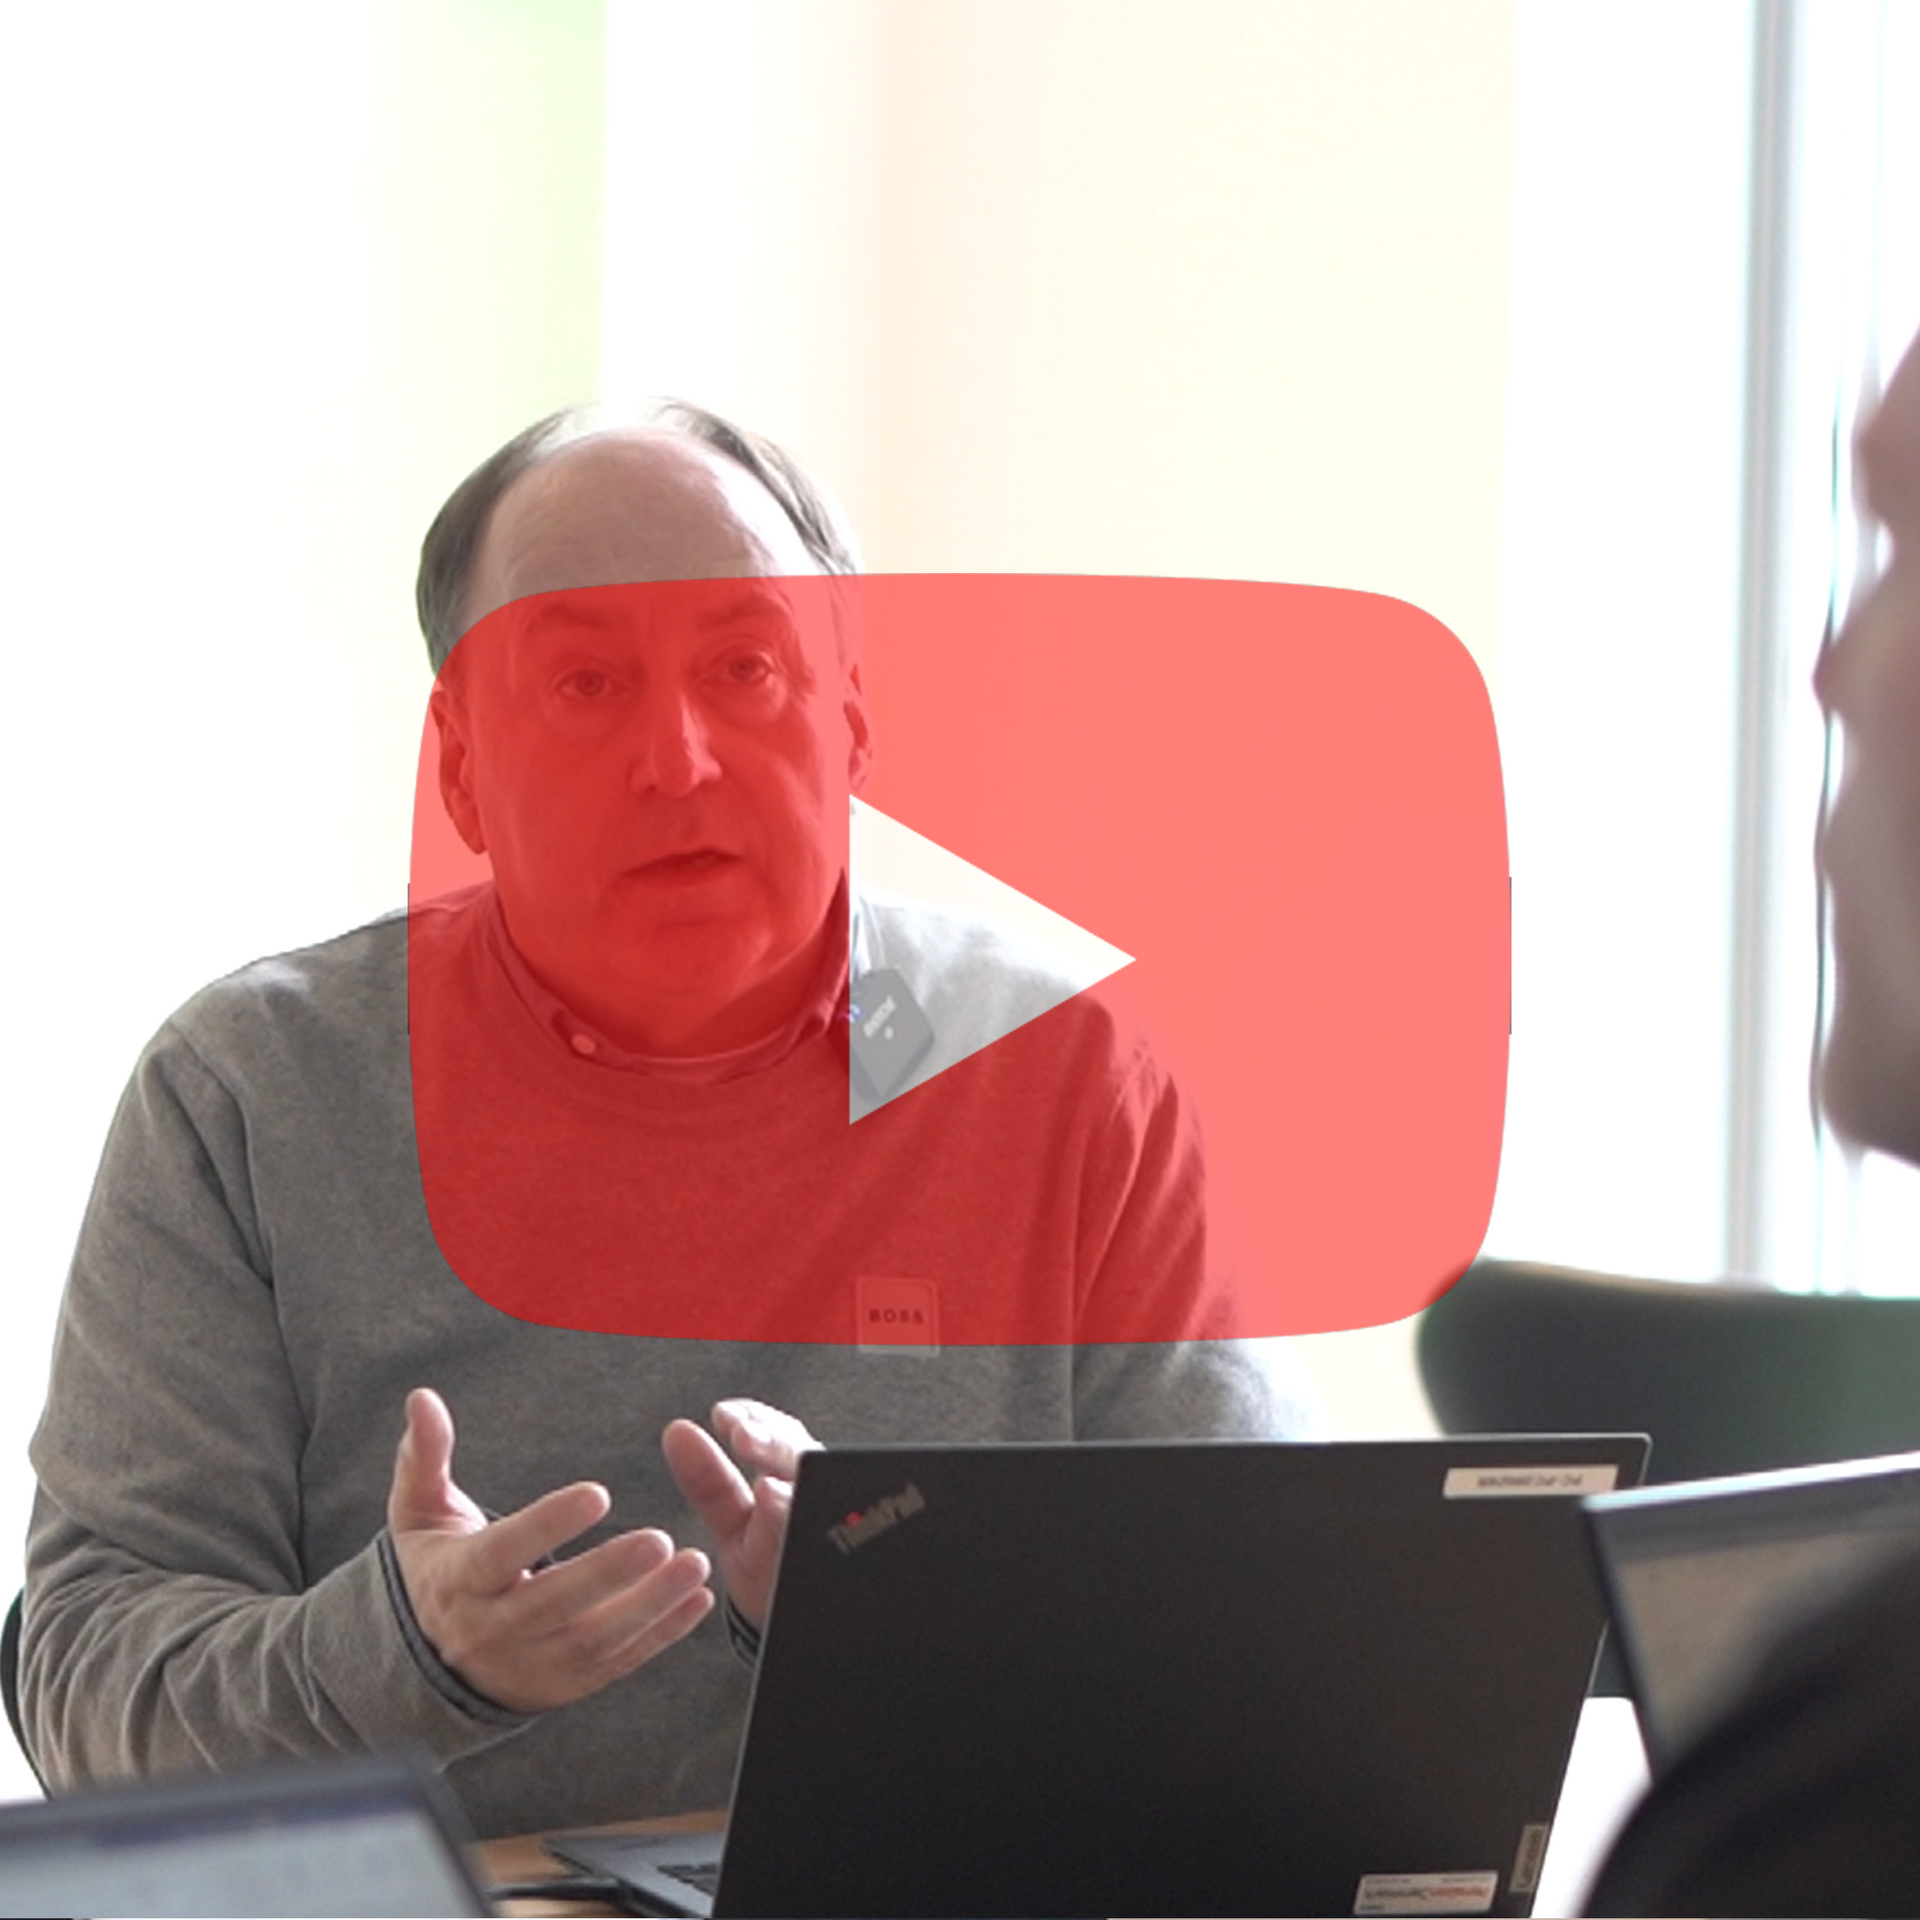 En mand, der sidder foran en bærbar computer med en rød afspilningsknap bag sig